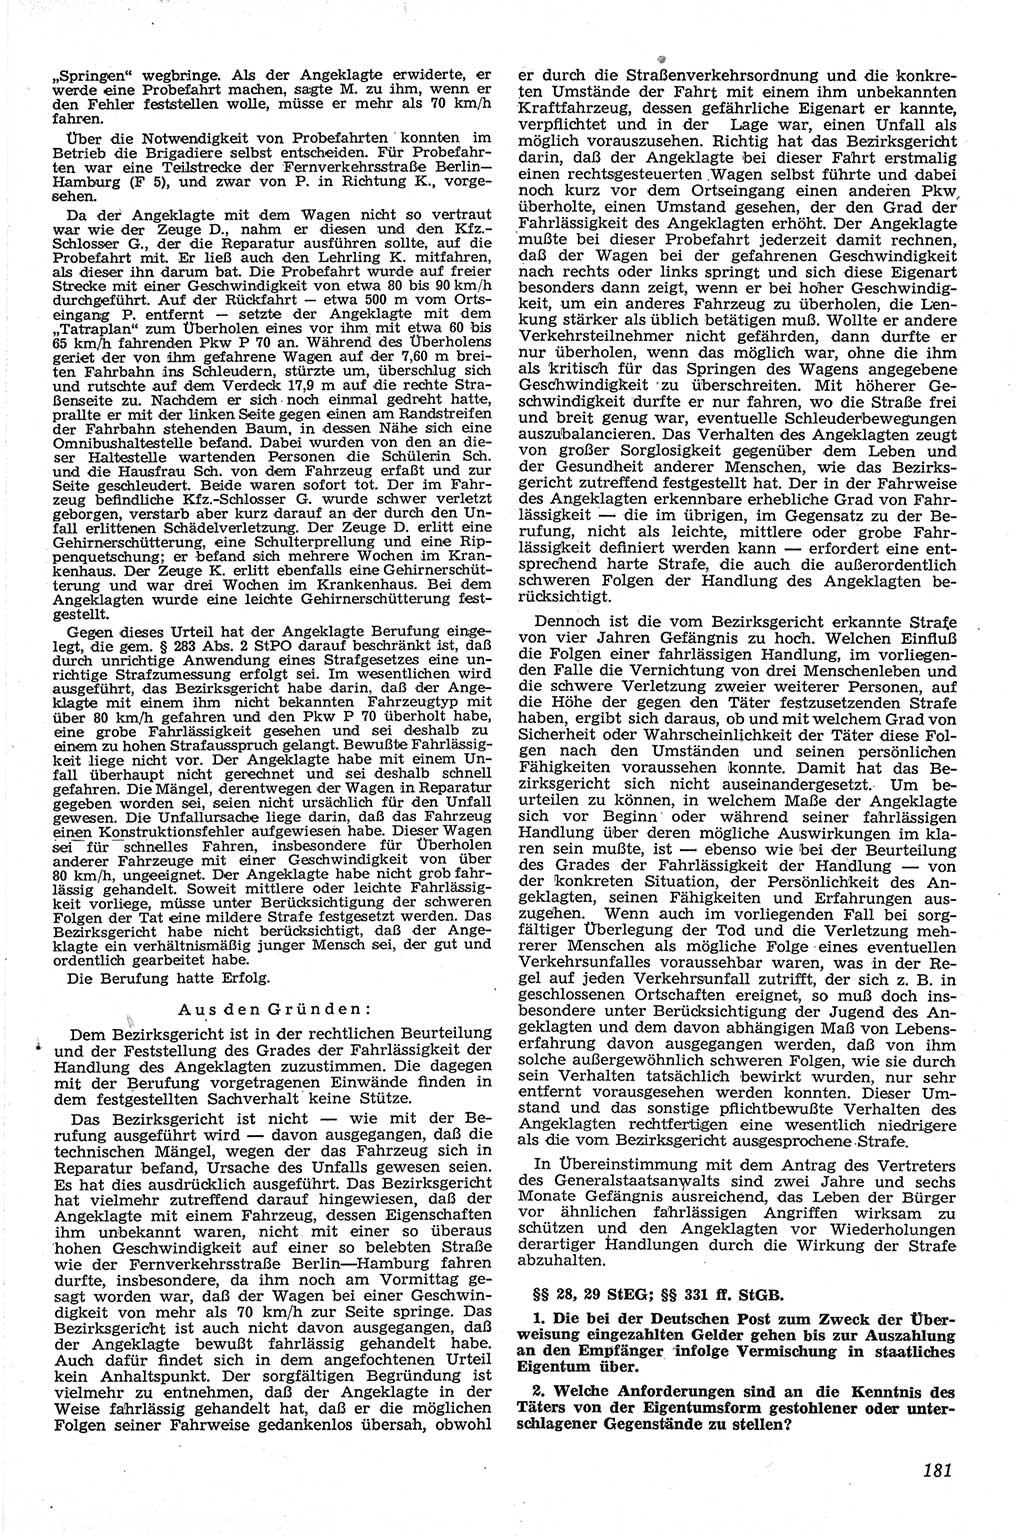 Neue Justiz (NJ), Zeitschrift für Recht und Rechtswissenschaft [Deutsche Demokratische Republik (DDR)], 13. Jahrgang 1959, Seite 181 (NJ DDR 1959, S. 181)